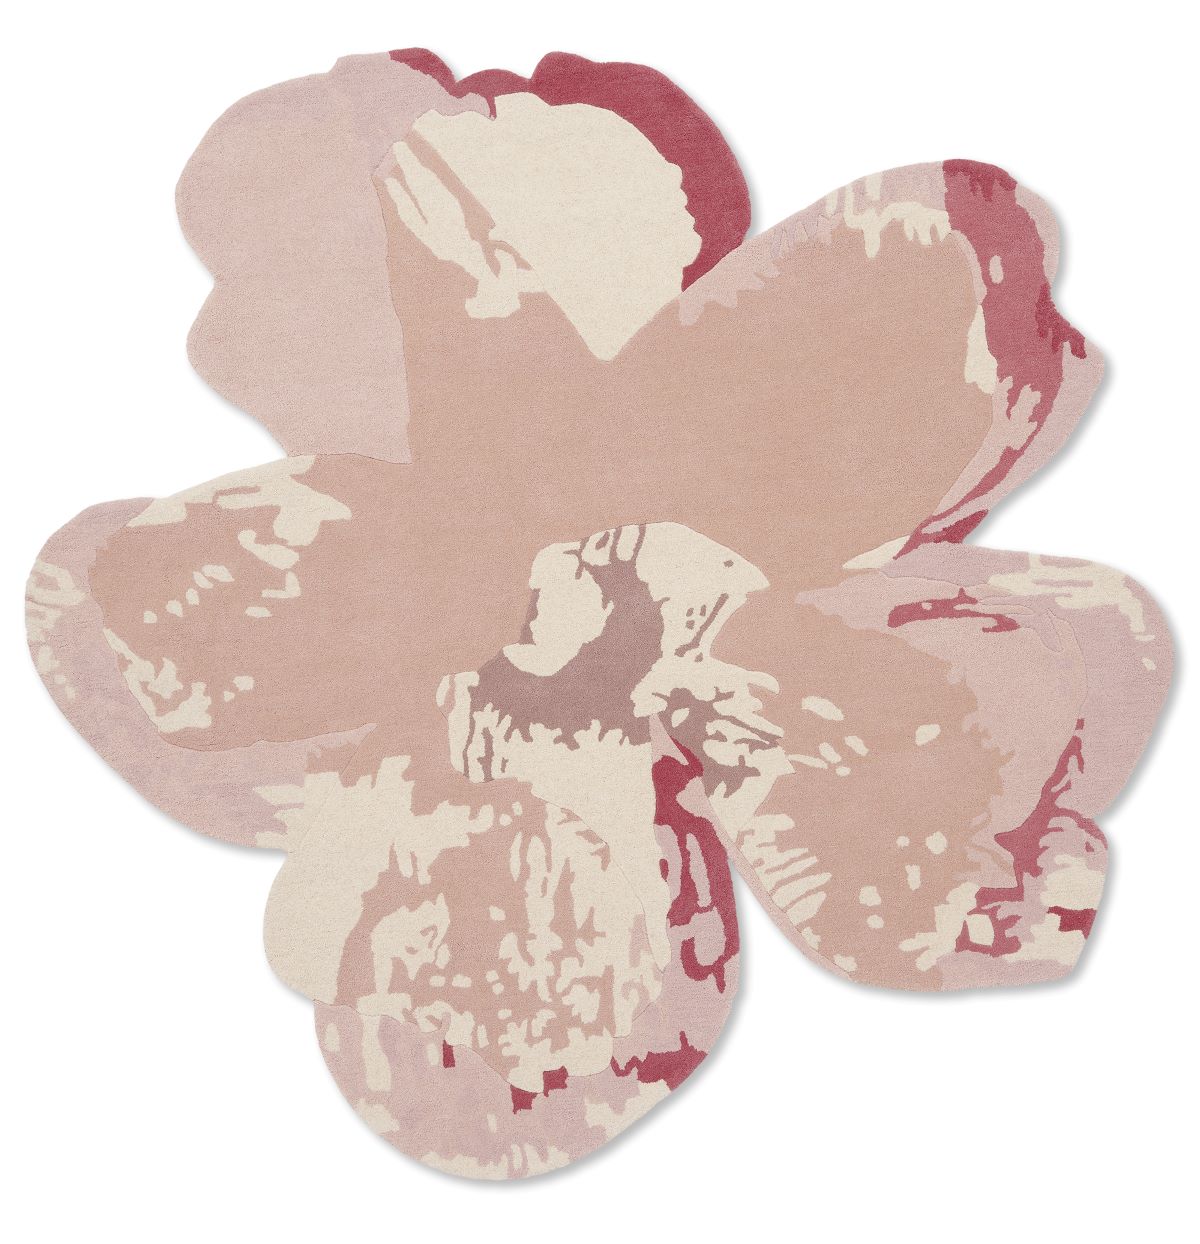 ted-baker-rug-shaped-magnolia-light-pink-162302